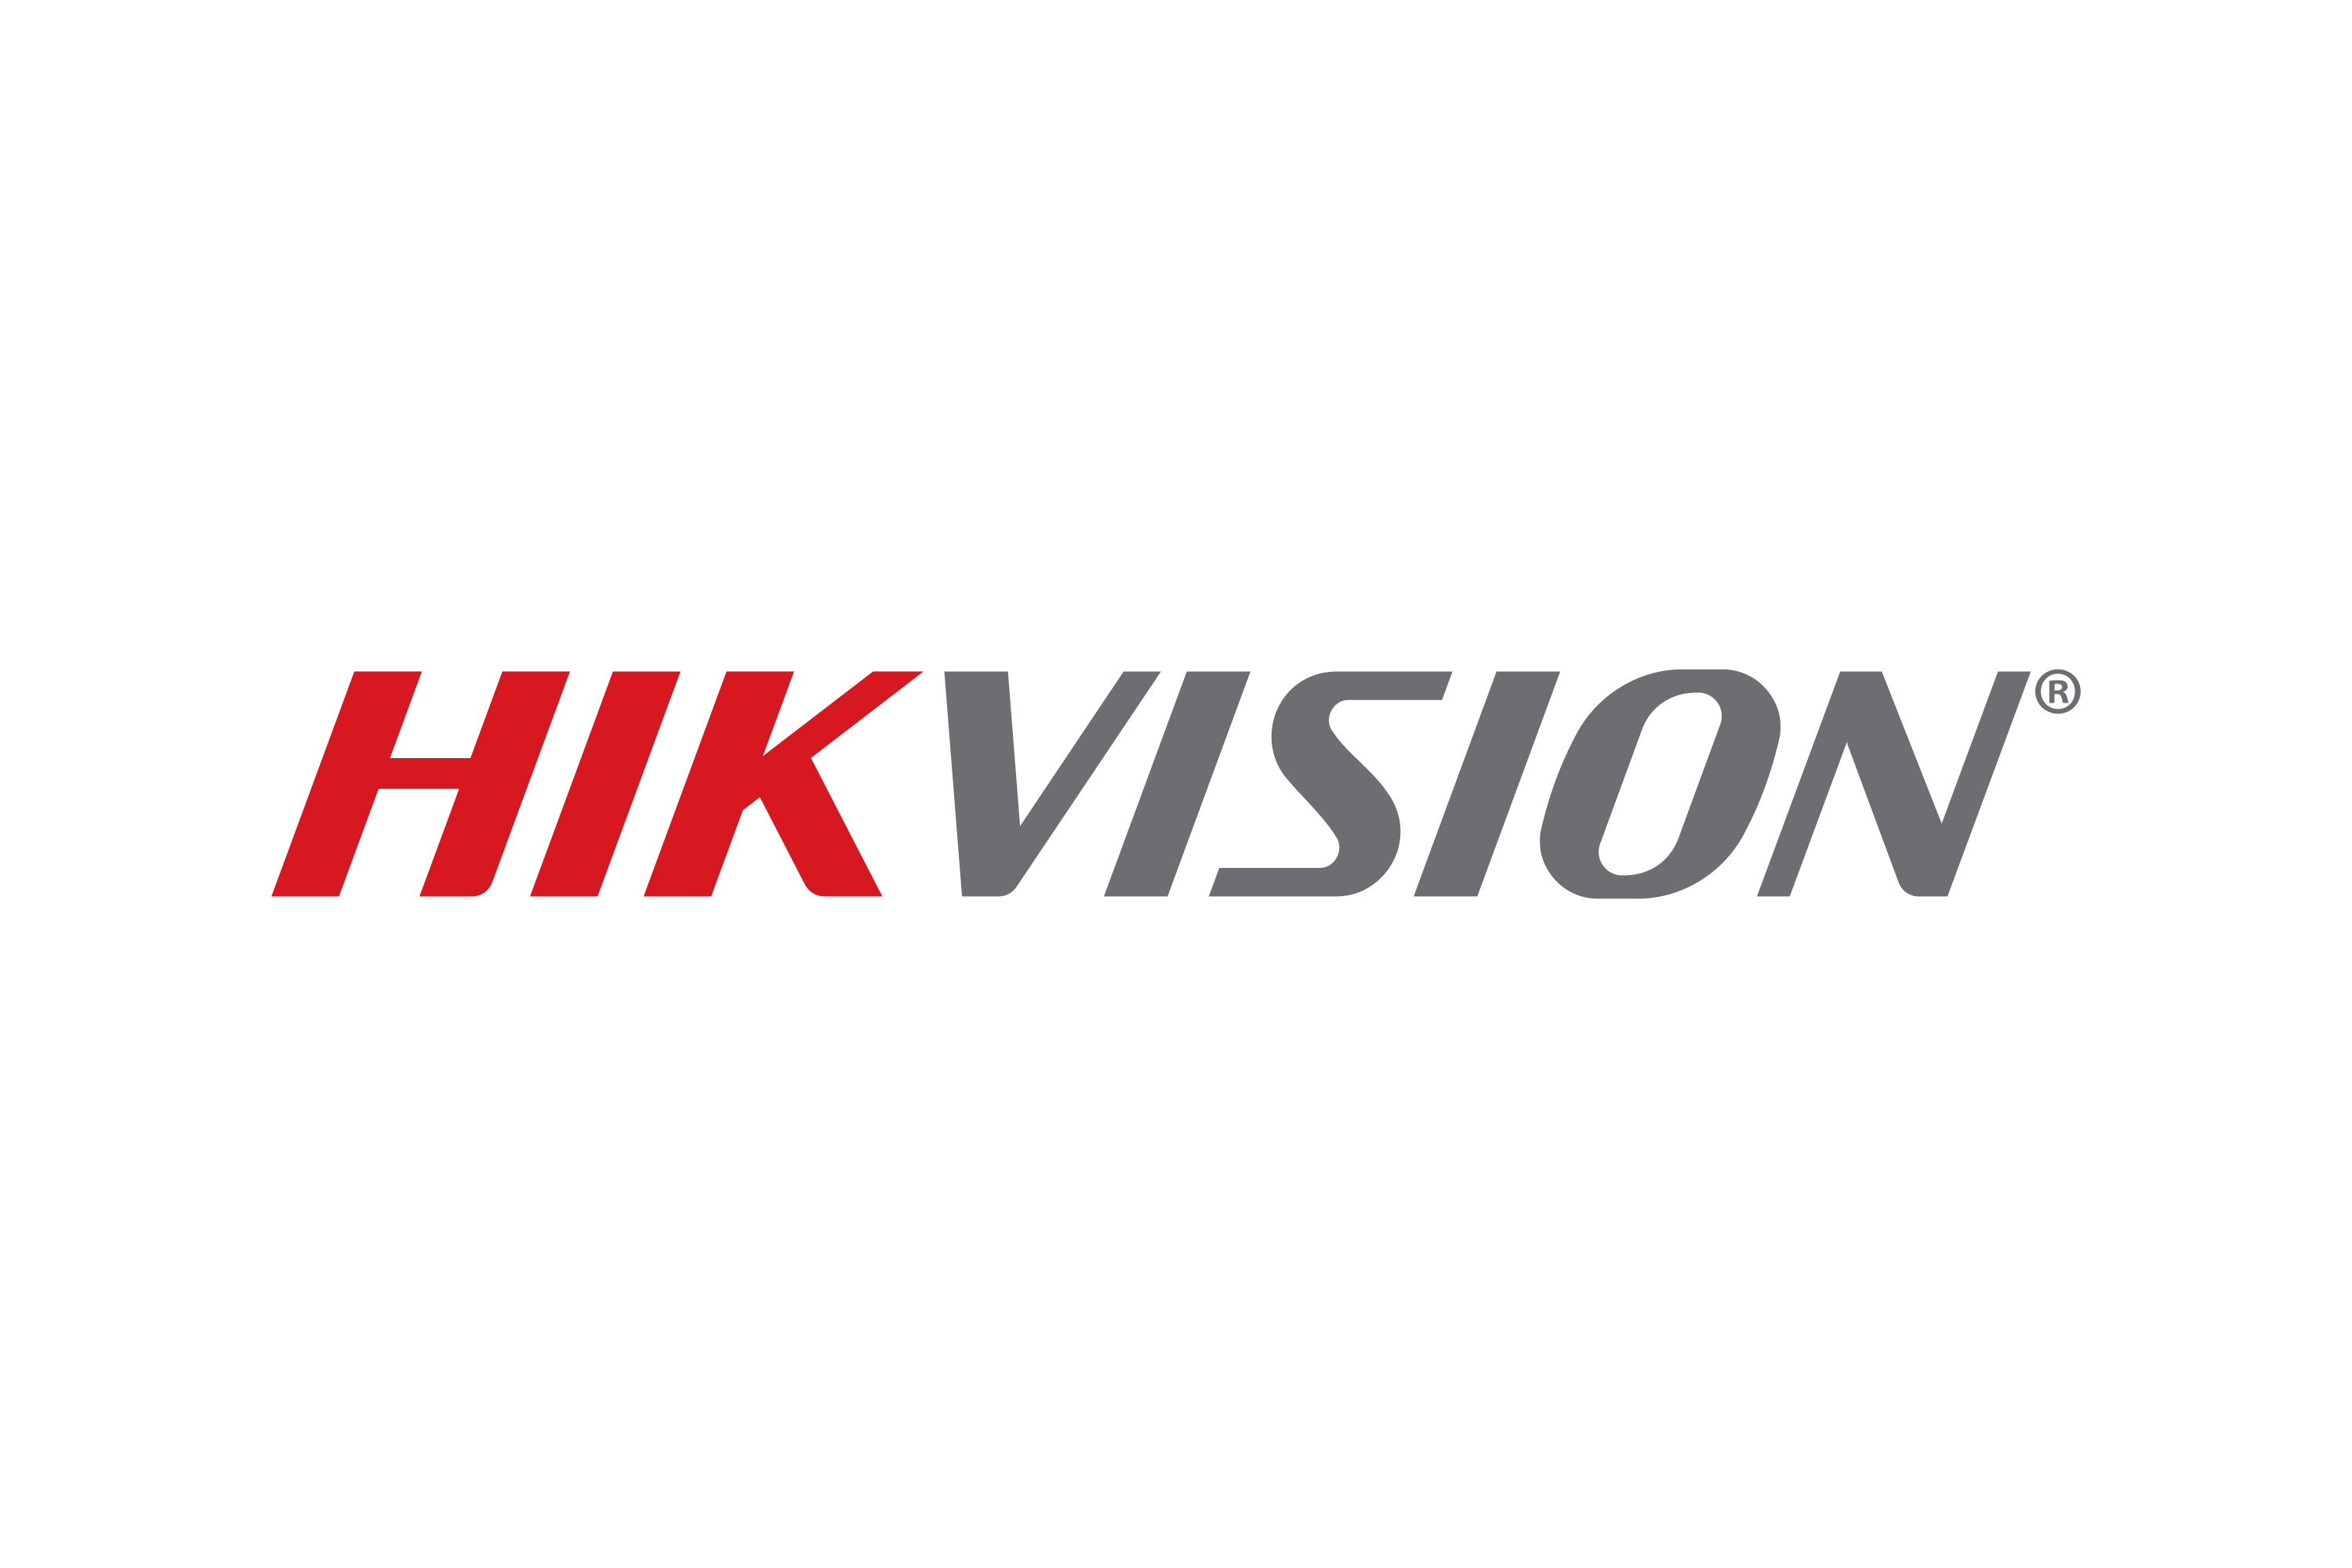 Download Hikvision Logo in SVG Vector or PNG File Format - Logo.wine